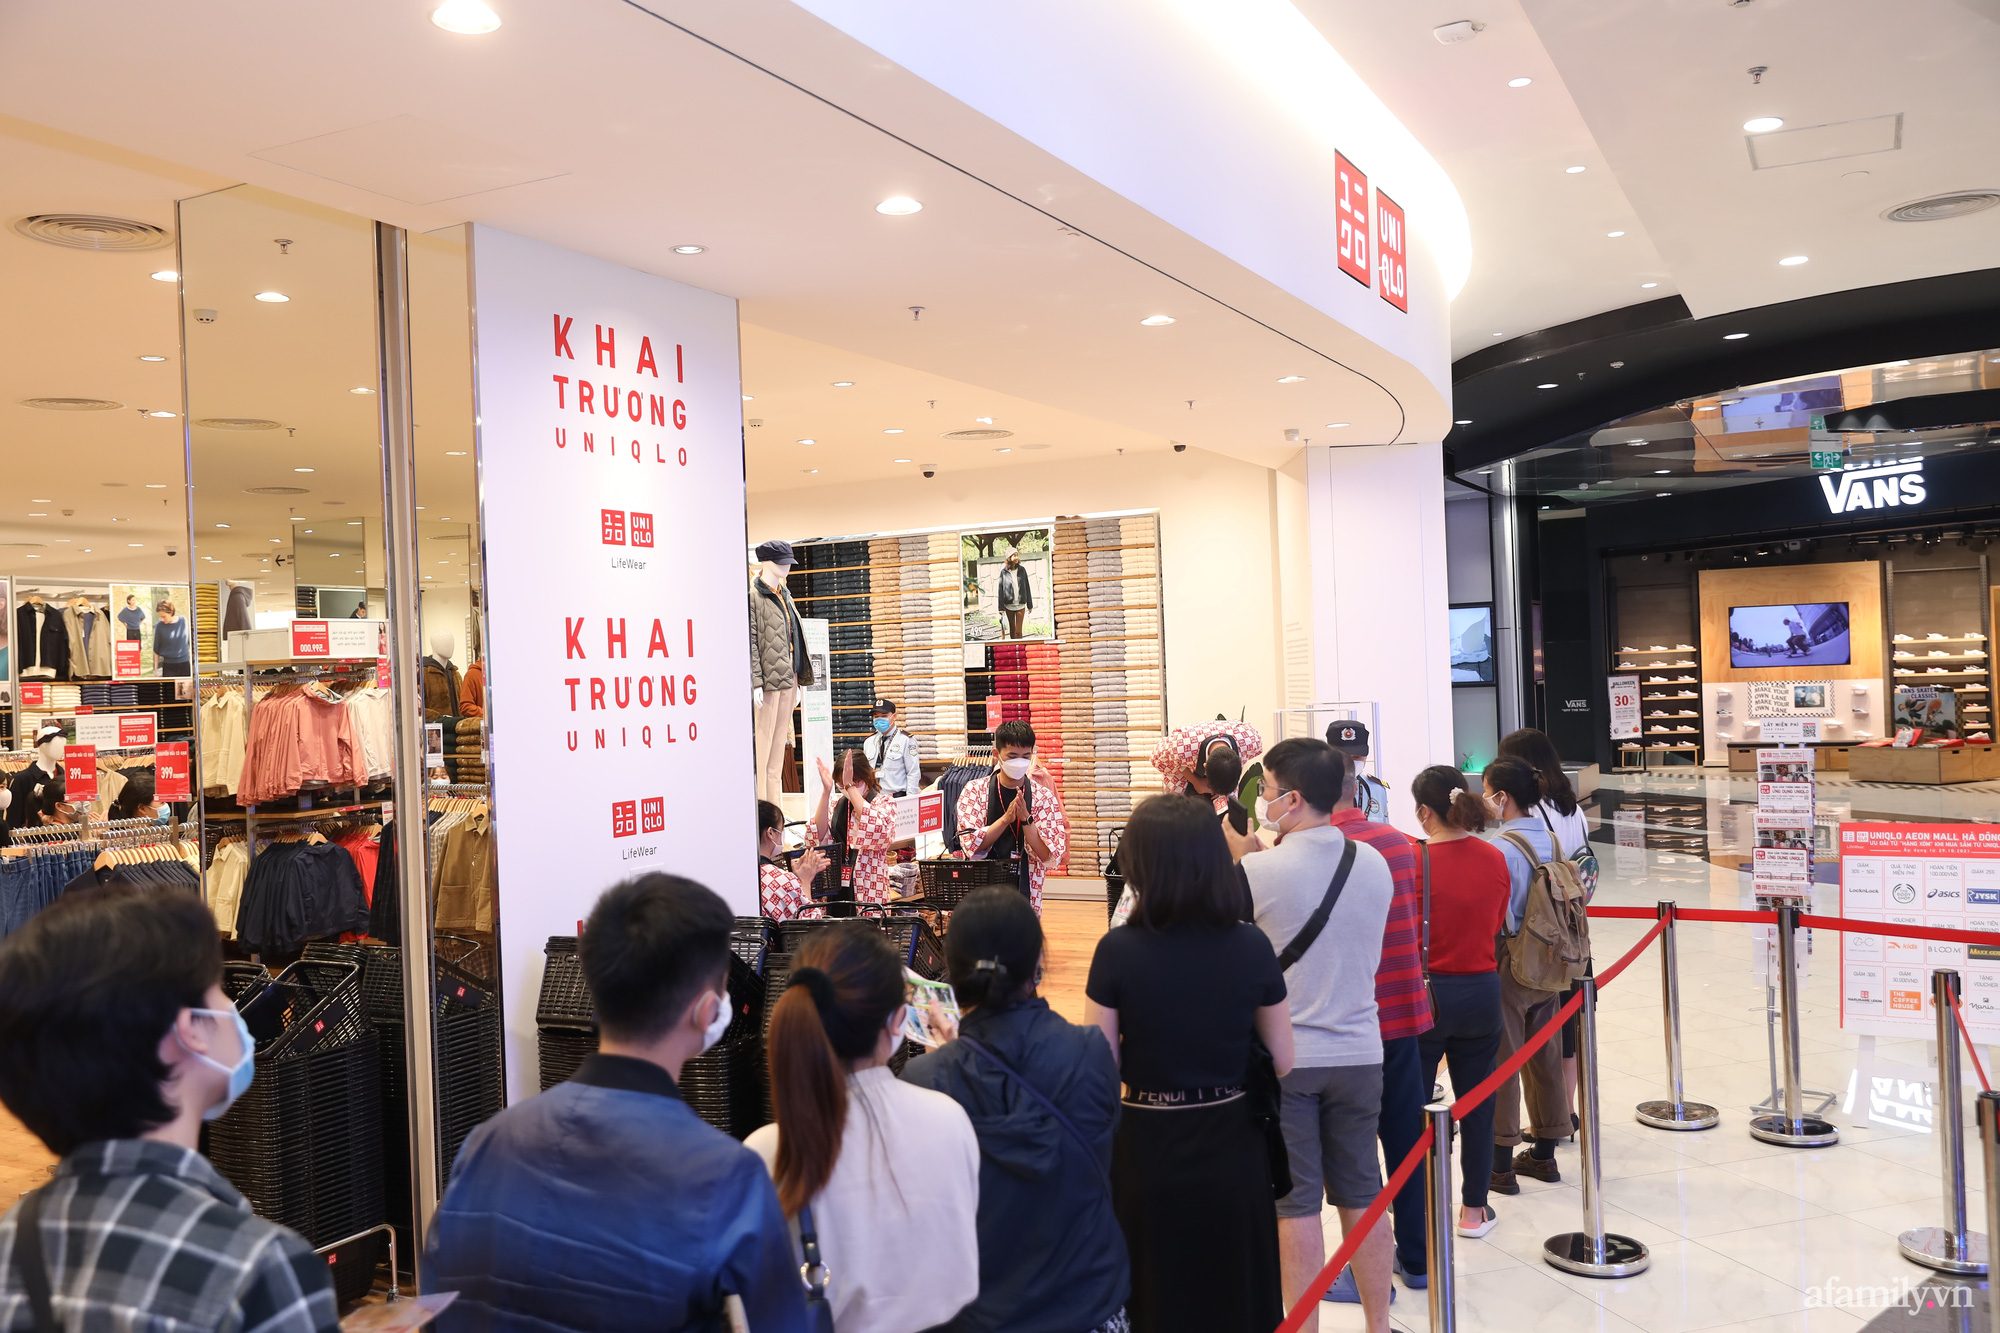 63 UNIQLO chính thức khai trương cửa hàng đầu tiên tại Hà Nội  Lịch Sự  kiện